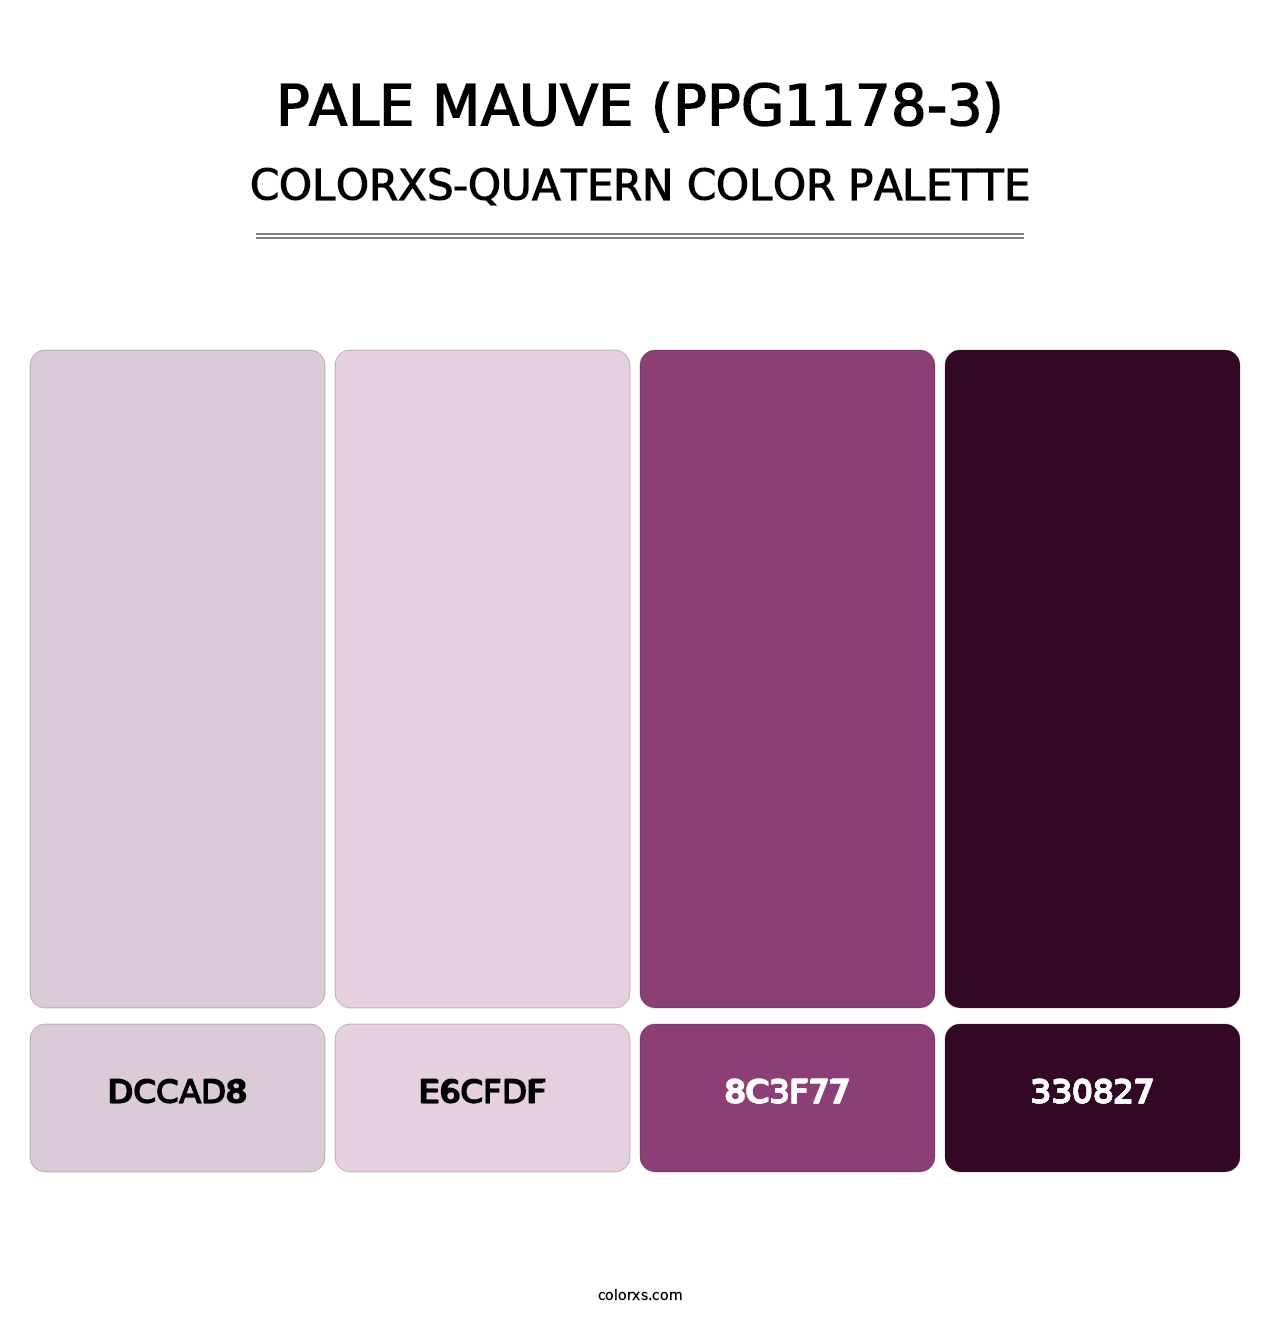 Pale Mauve (PPG1178-3) - Colorxs Quatern Palette